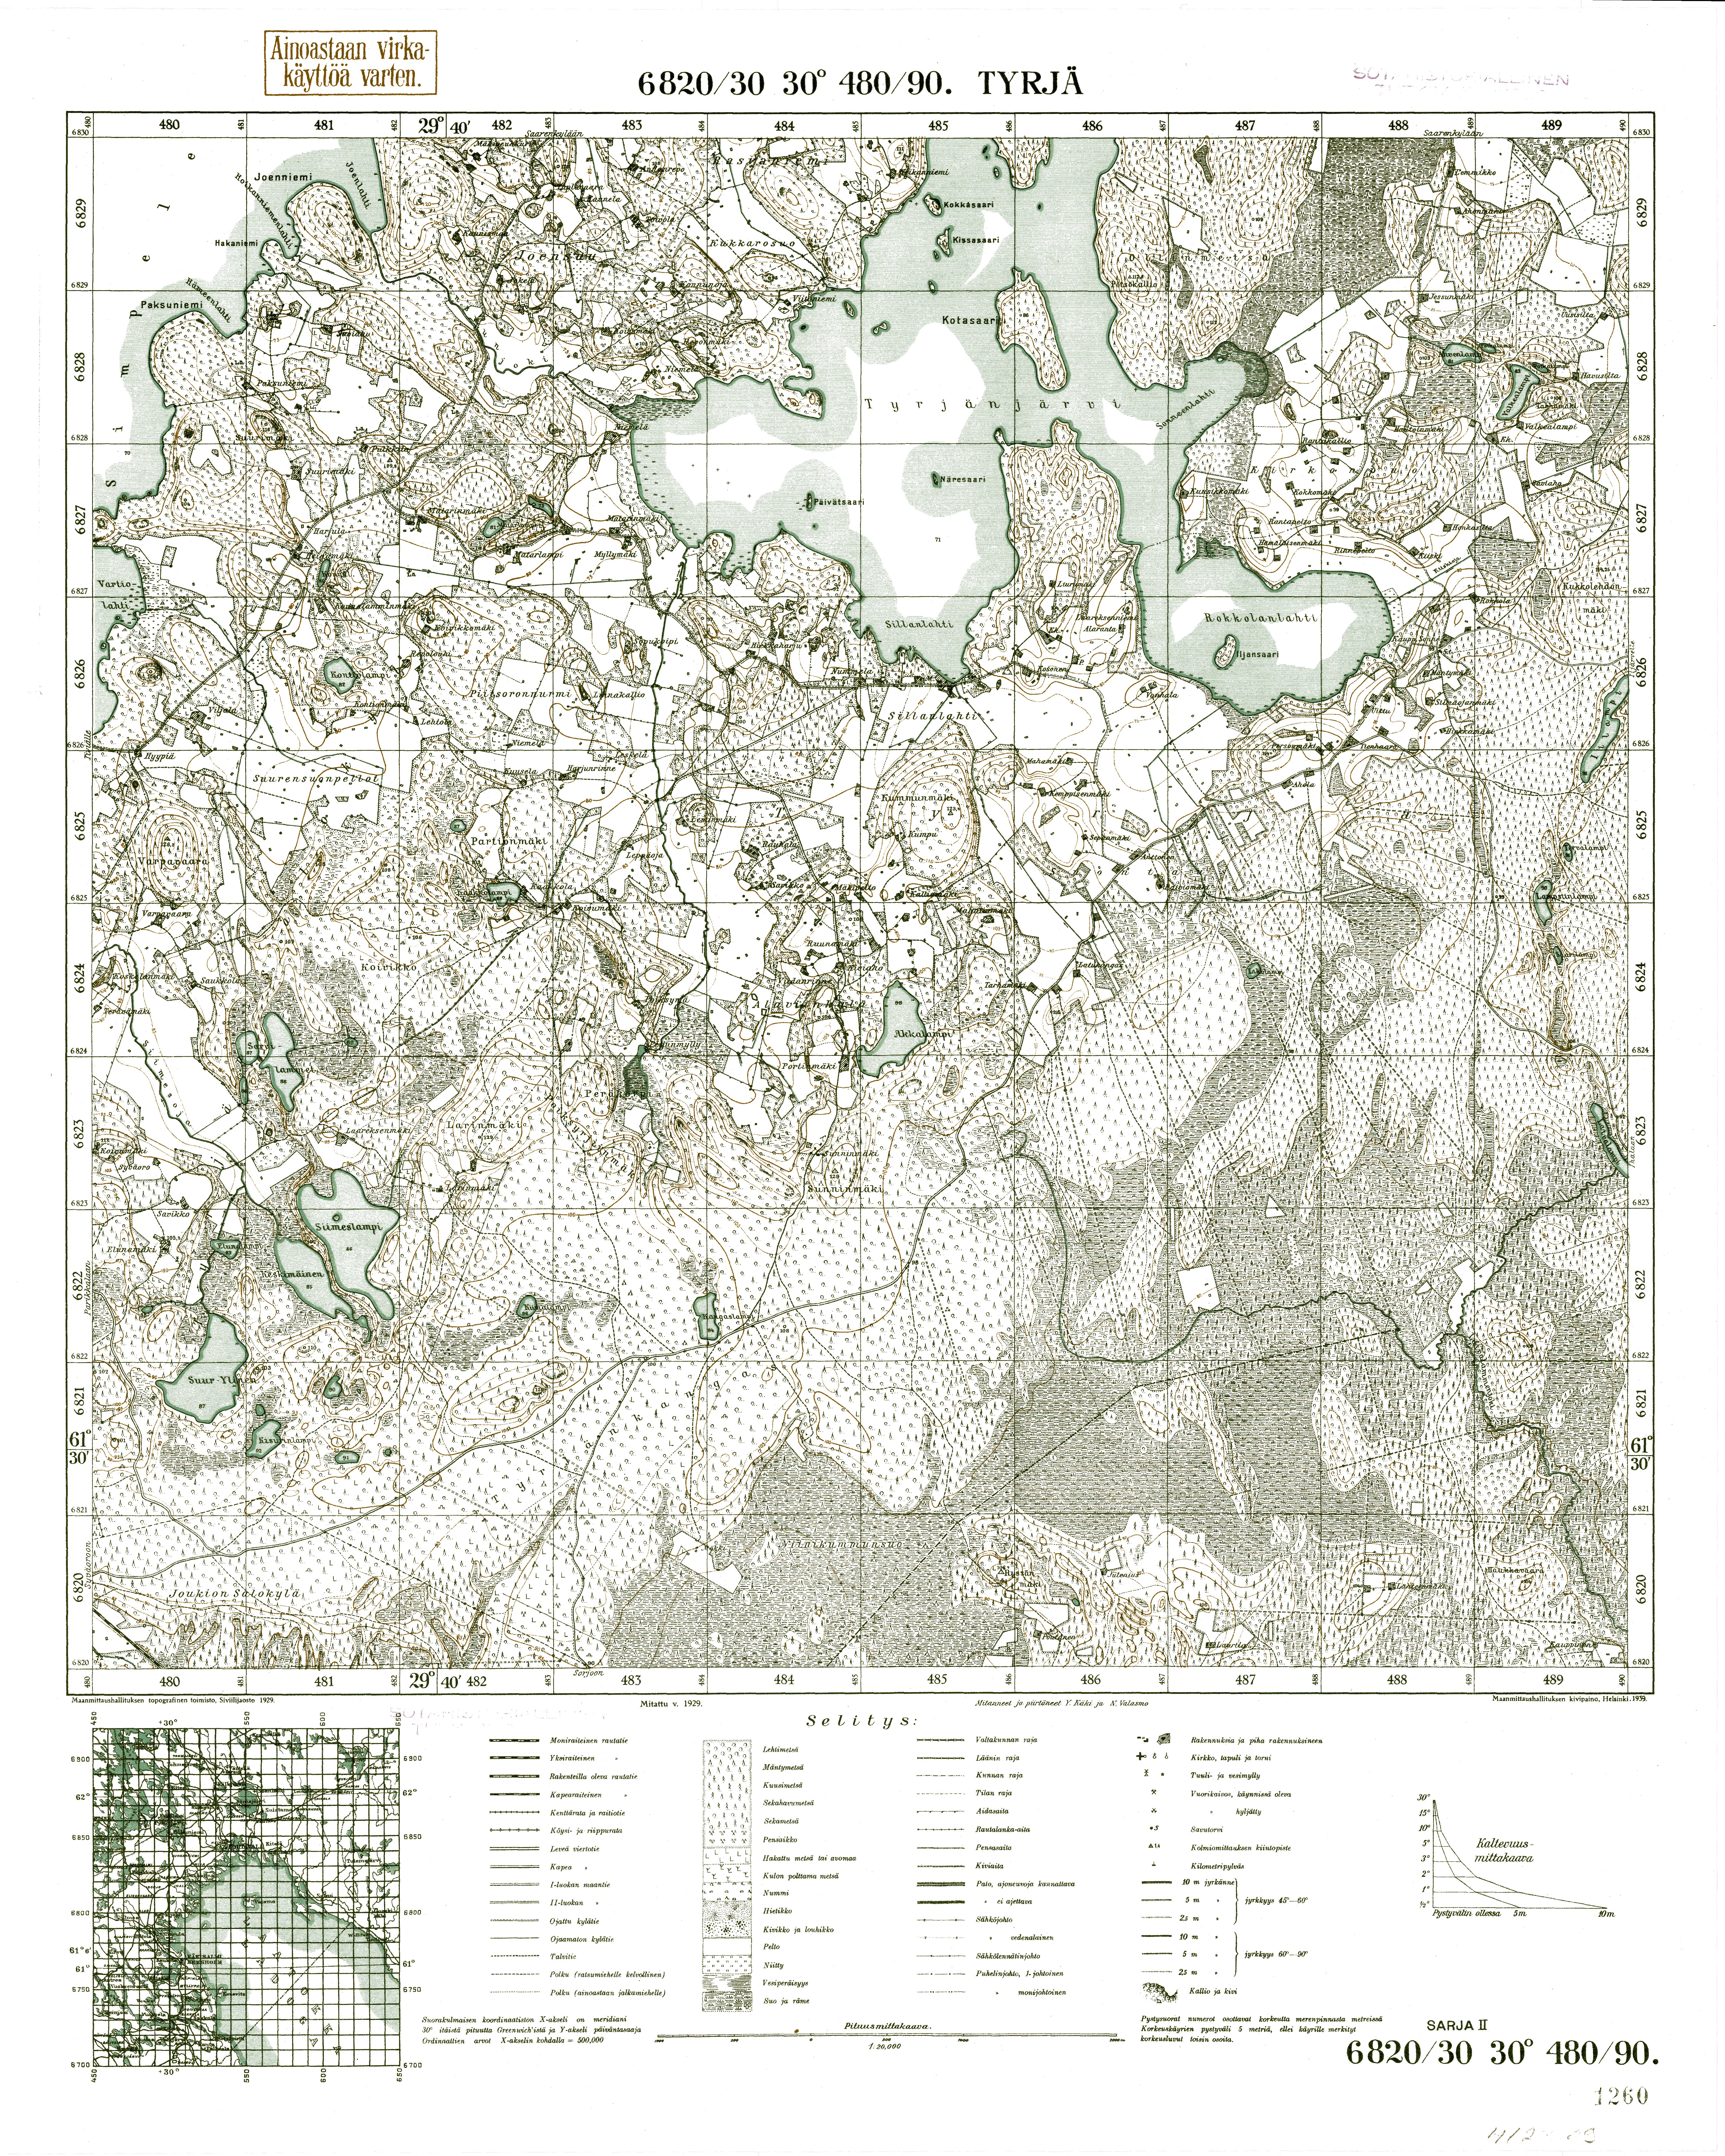 Tyrjä. Topografikartta 412309. Topographic map from 1939